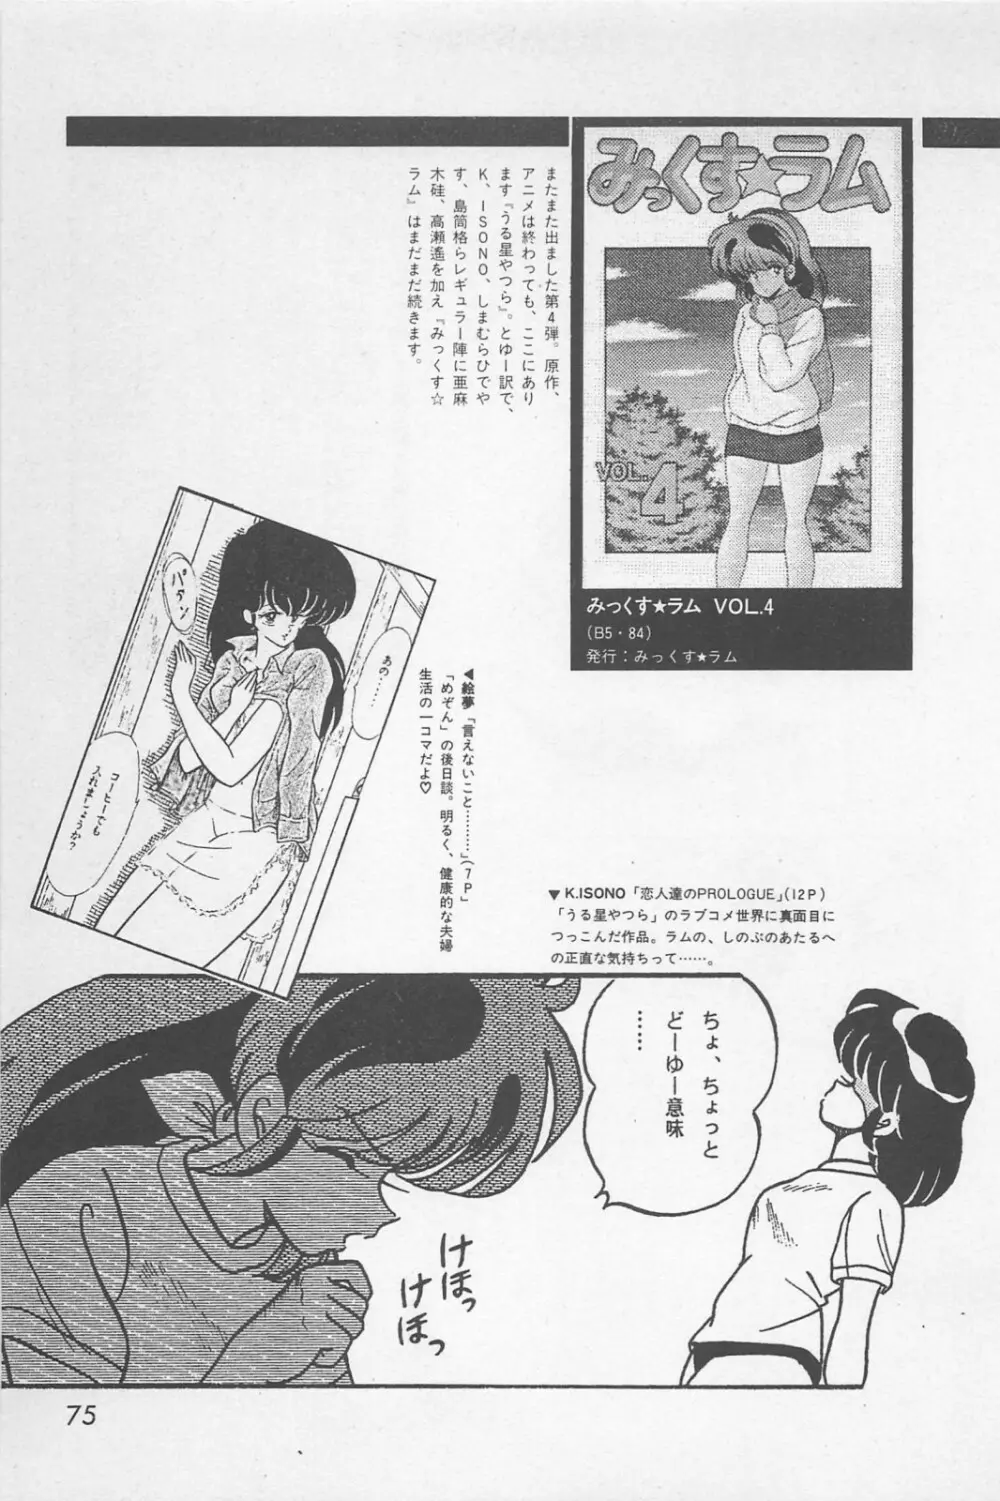 美少女症候群 1985 77ページ